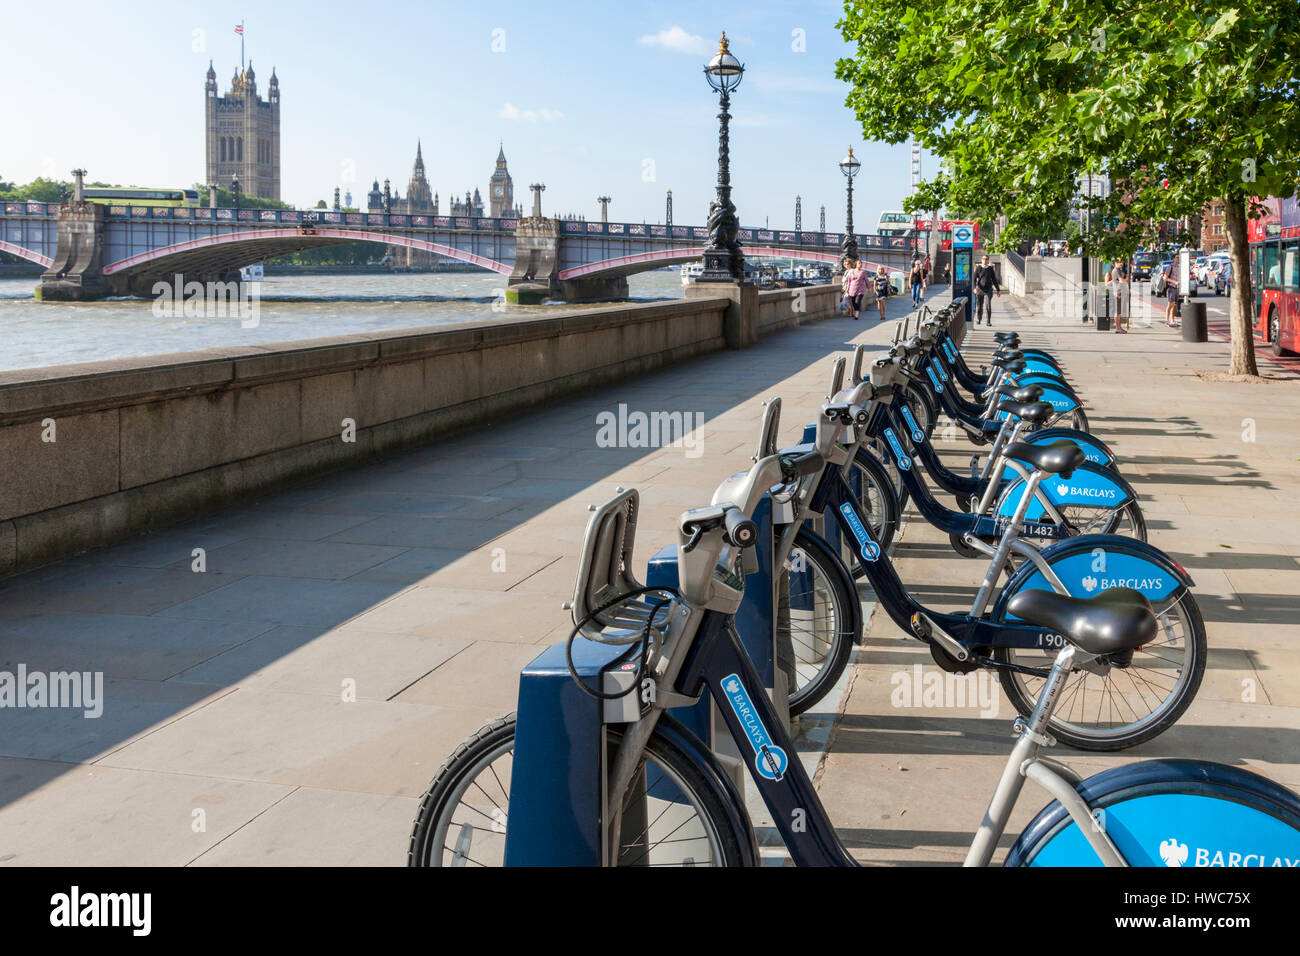 Vélos Barclays, également connu sous le nom de Boris bikes. Location de vélo à Londres, Angleterre, RU Banque D'Images